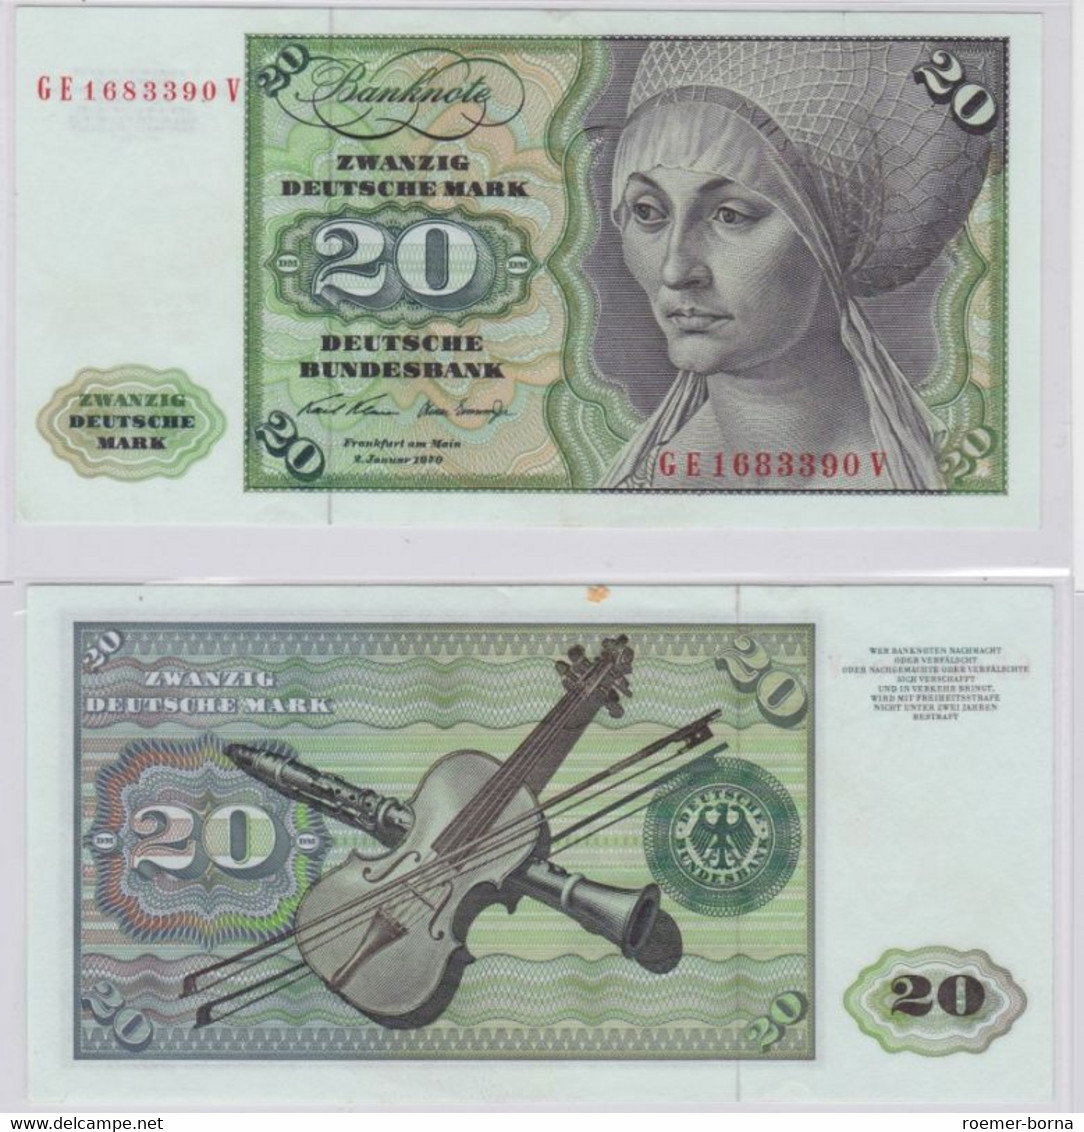 T145720 Banknote 20 DM Deutsche Mark Ro. 271b Schein 2.Jan. 1970 KN GE 1683390 V - 20 Deutsche Mark